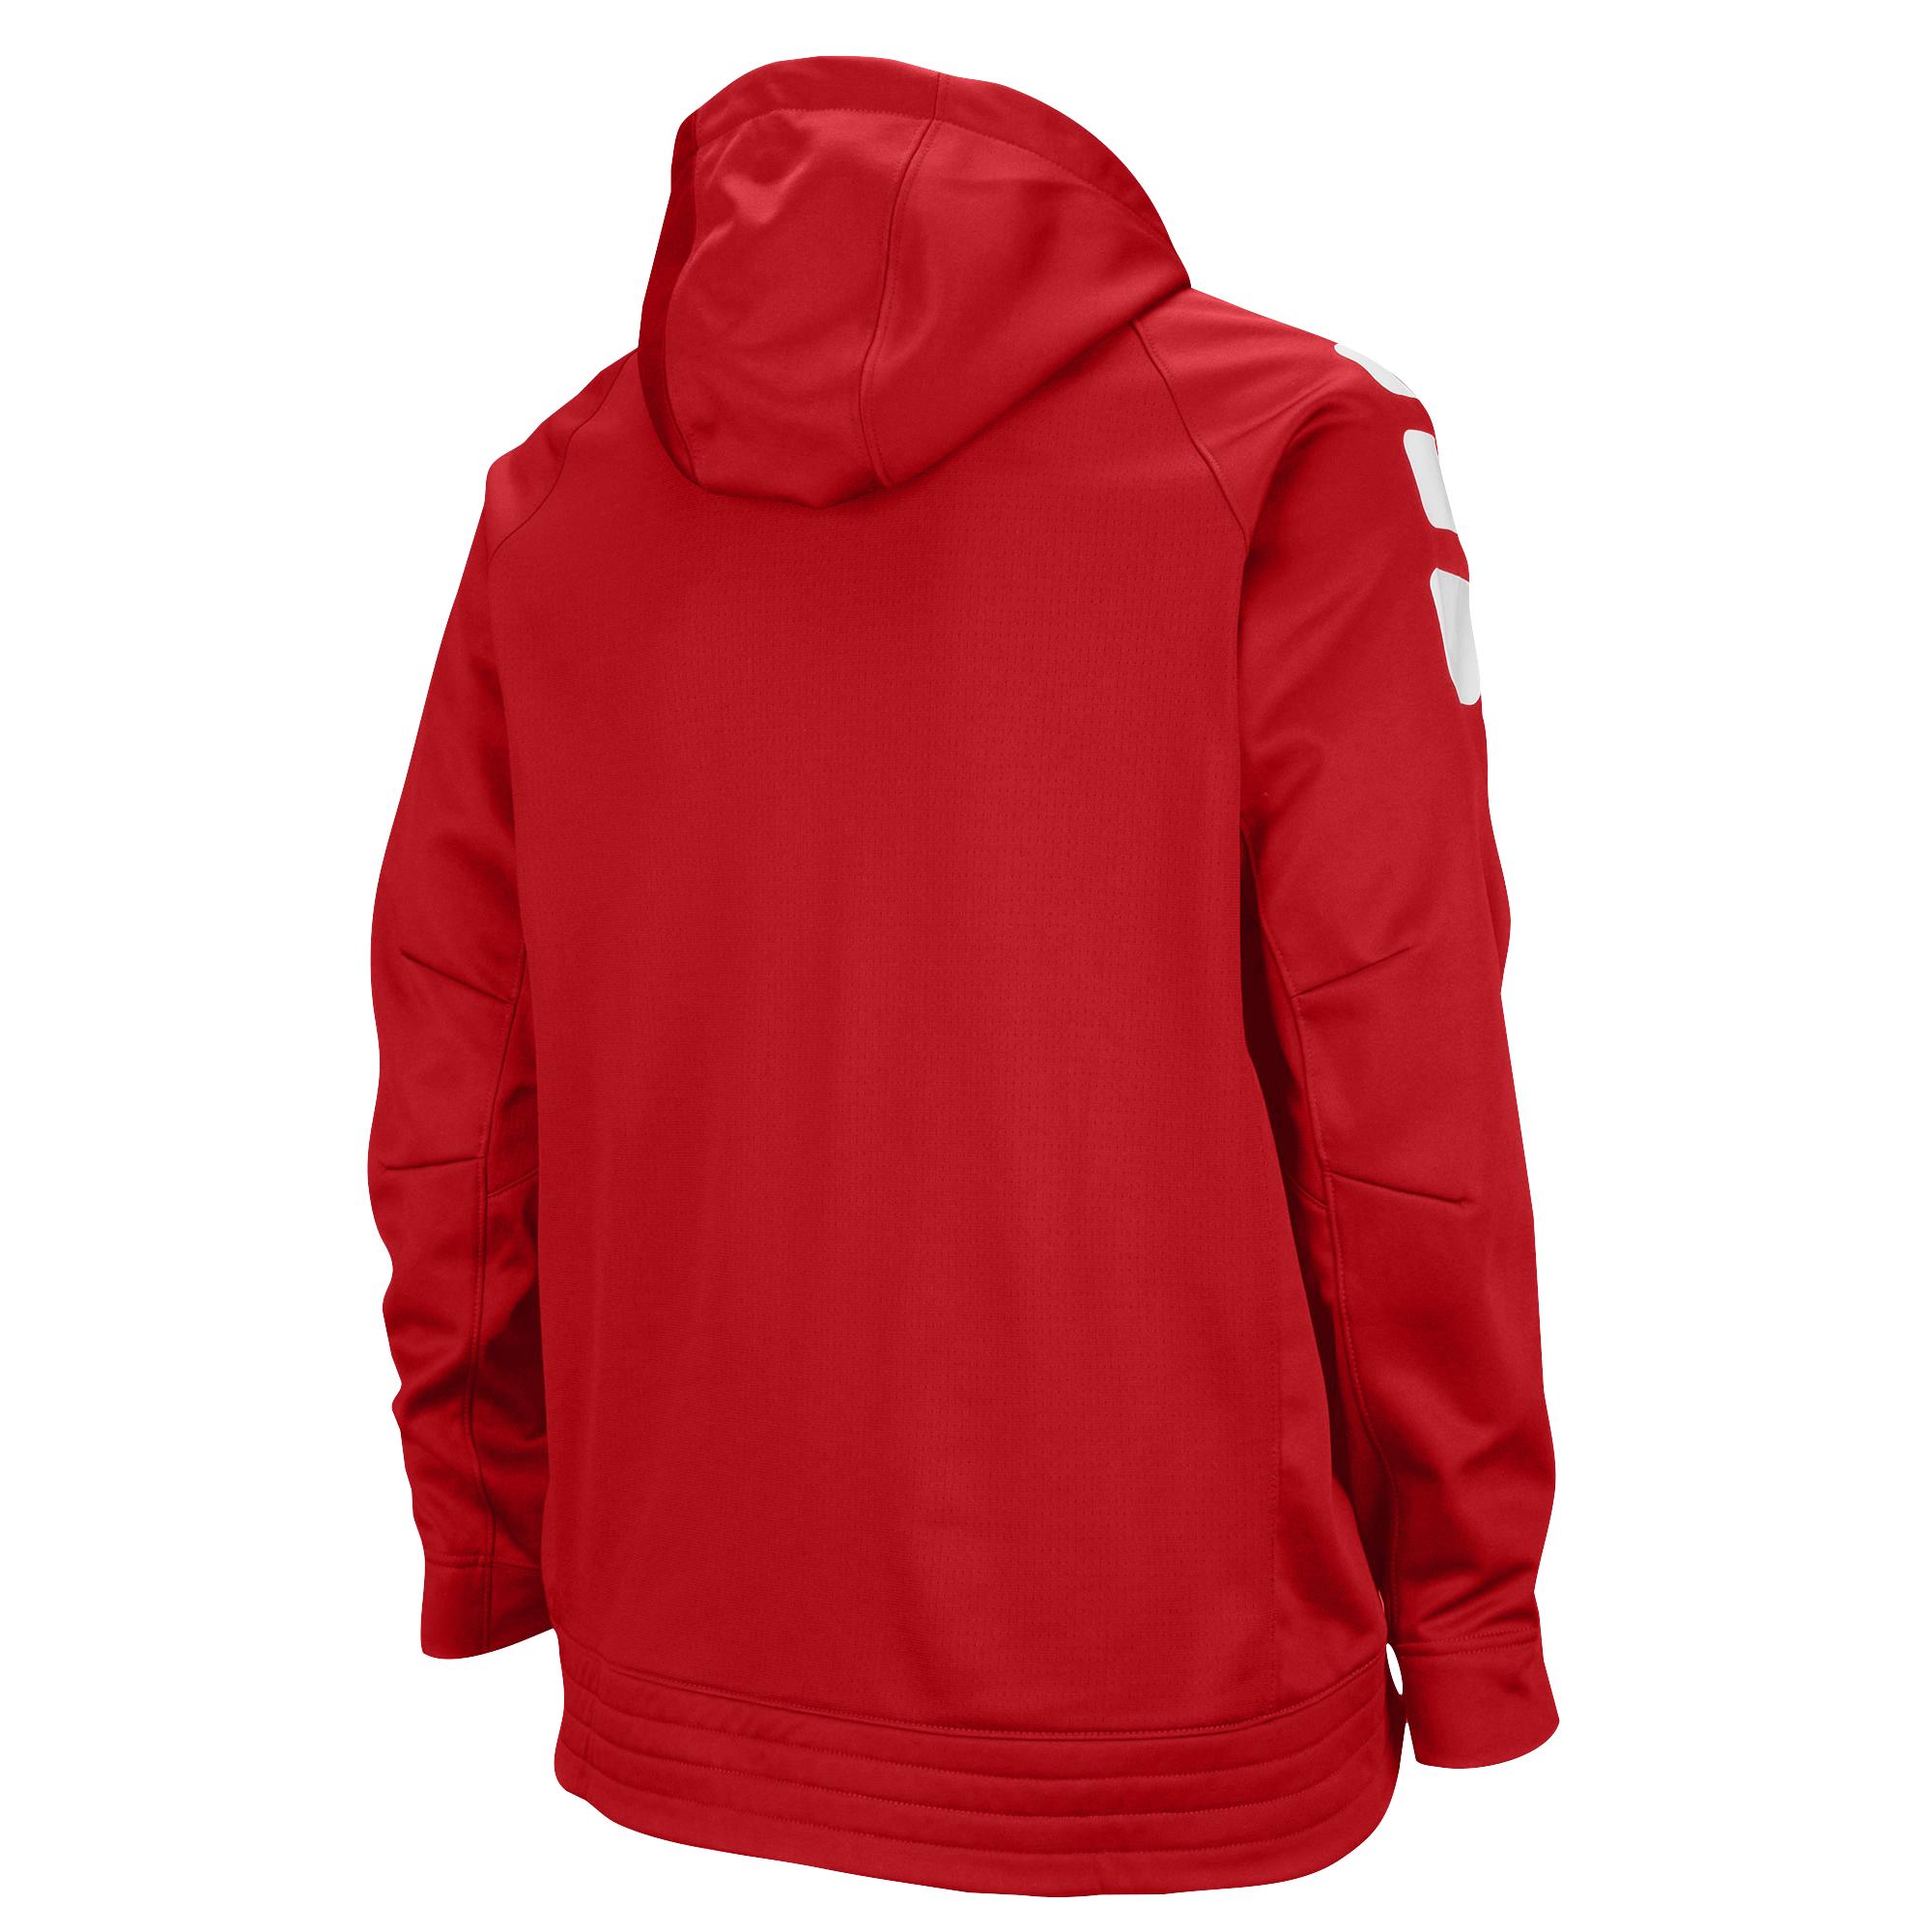 Nike Synthetic Team Elite Stripe Full Zip Hoodie in Scarlet/White (Red) for  Men - Lyst